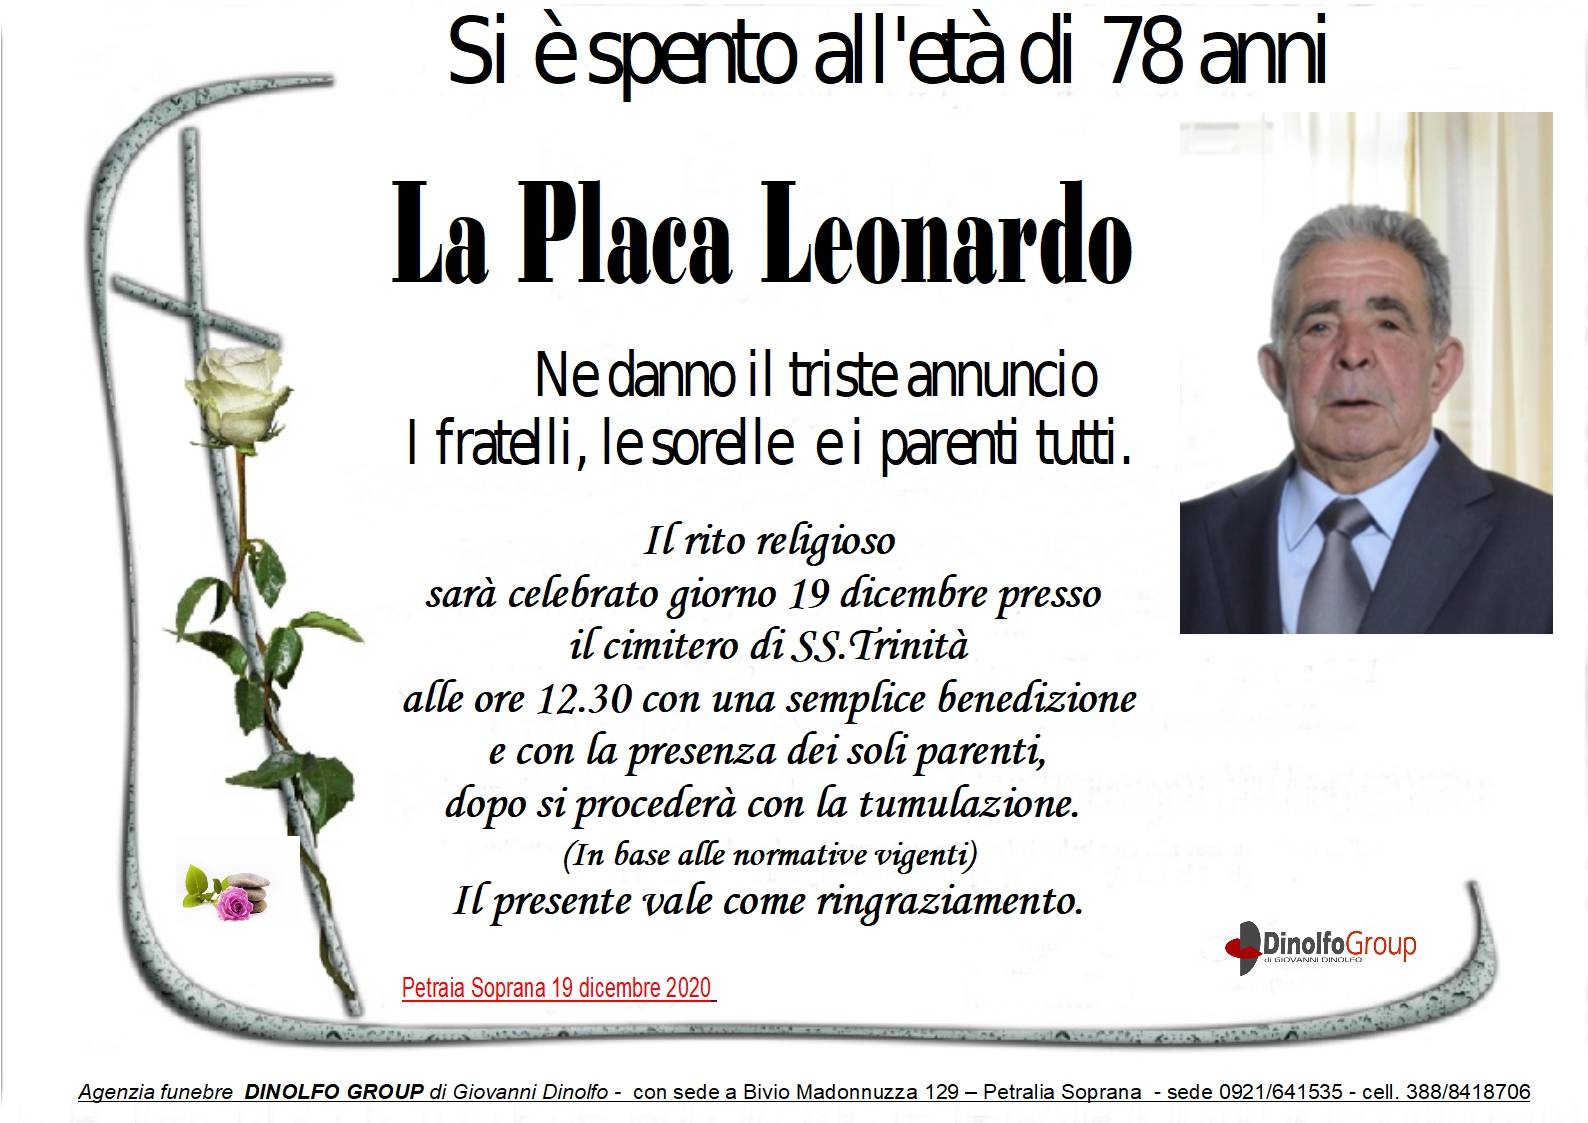 Leonardo La Placa